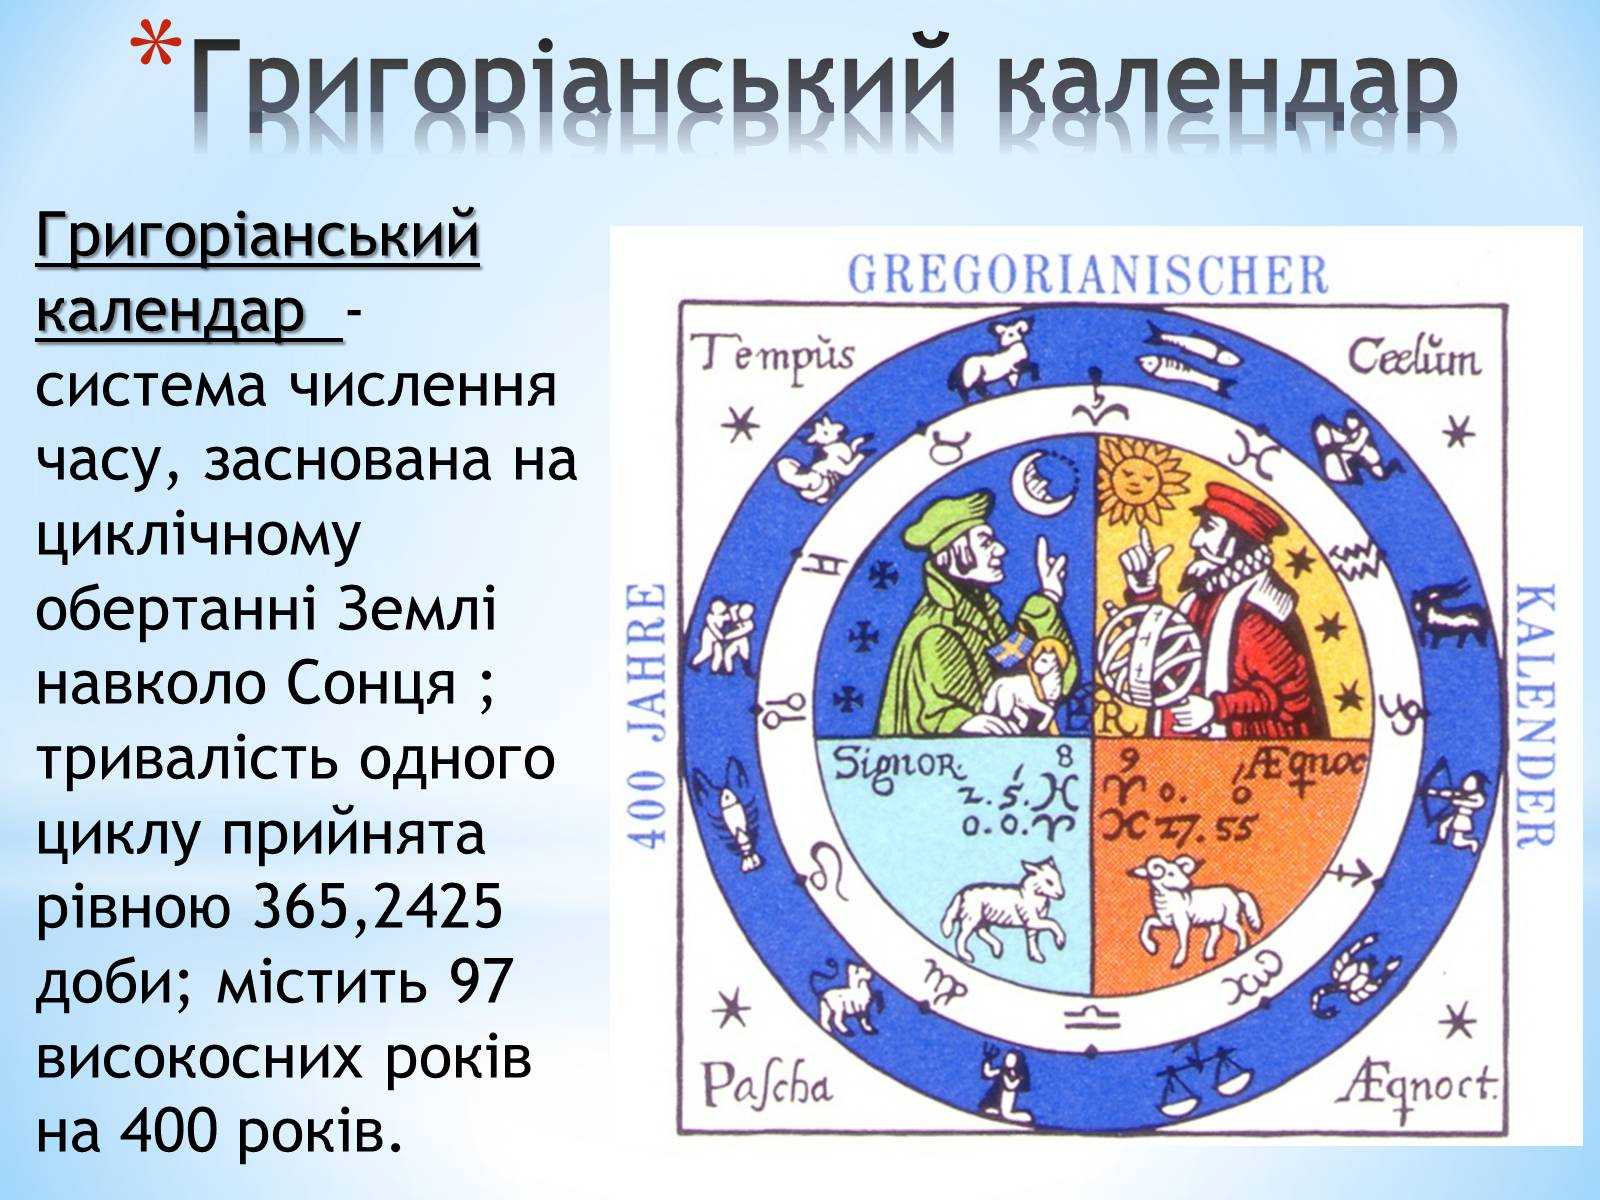 Все календари руси и россии: допетровский от сотворения мира, юлианский, григорианский, византийский. чем они отличается?